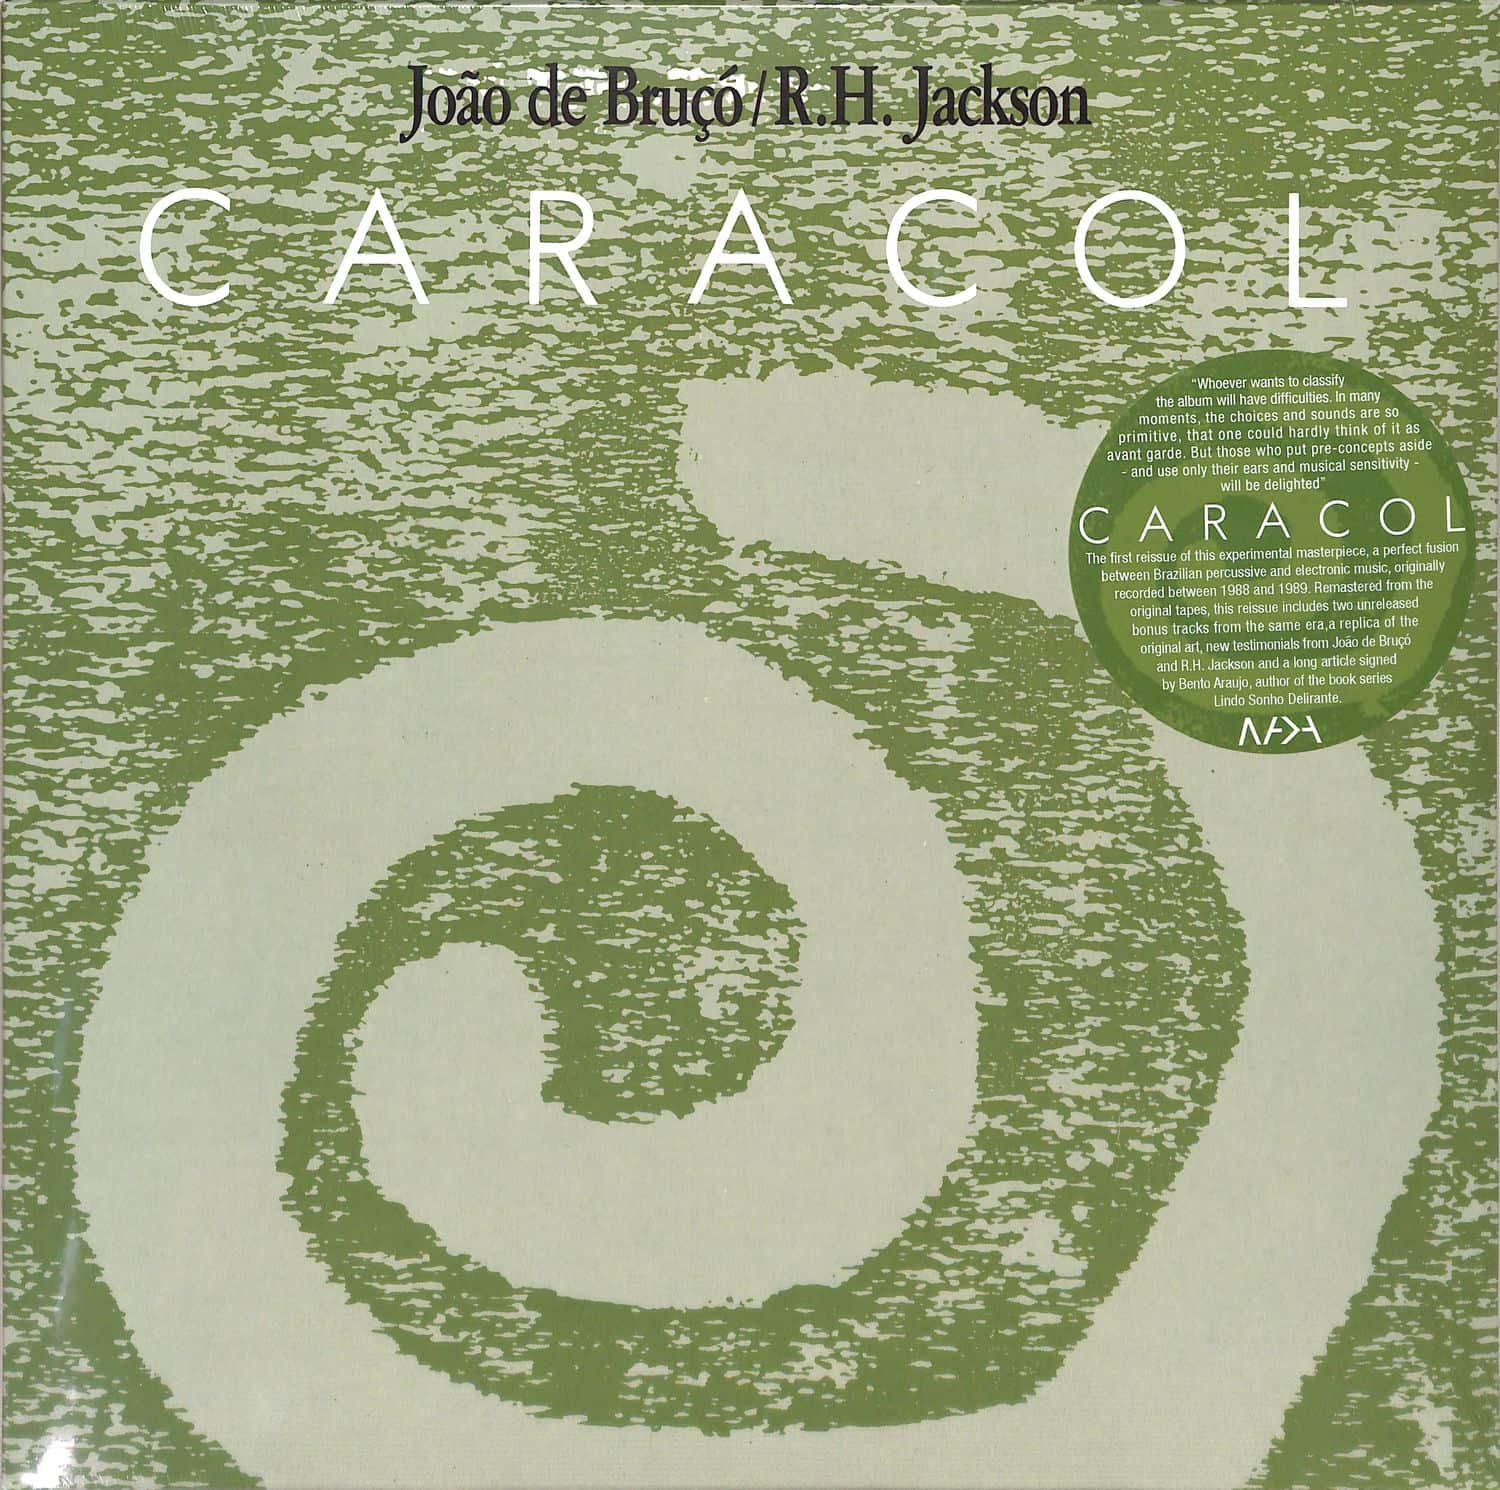 Joao De Bruco / R.H. Jackson - CARACOL 